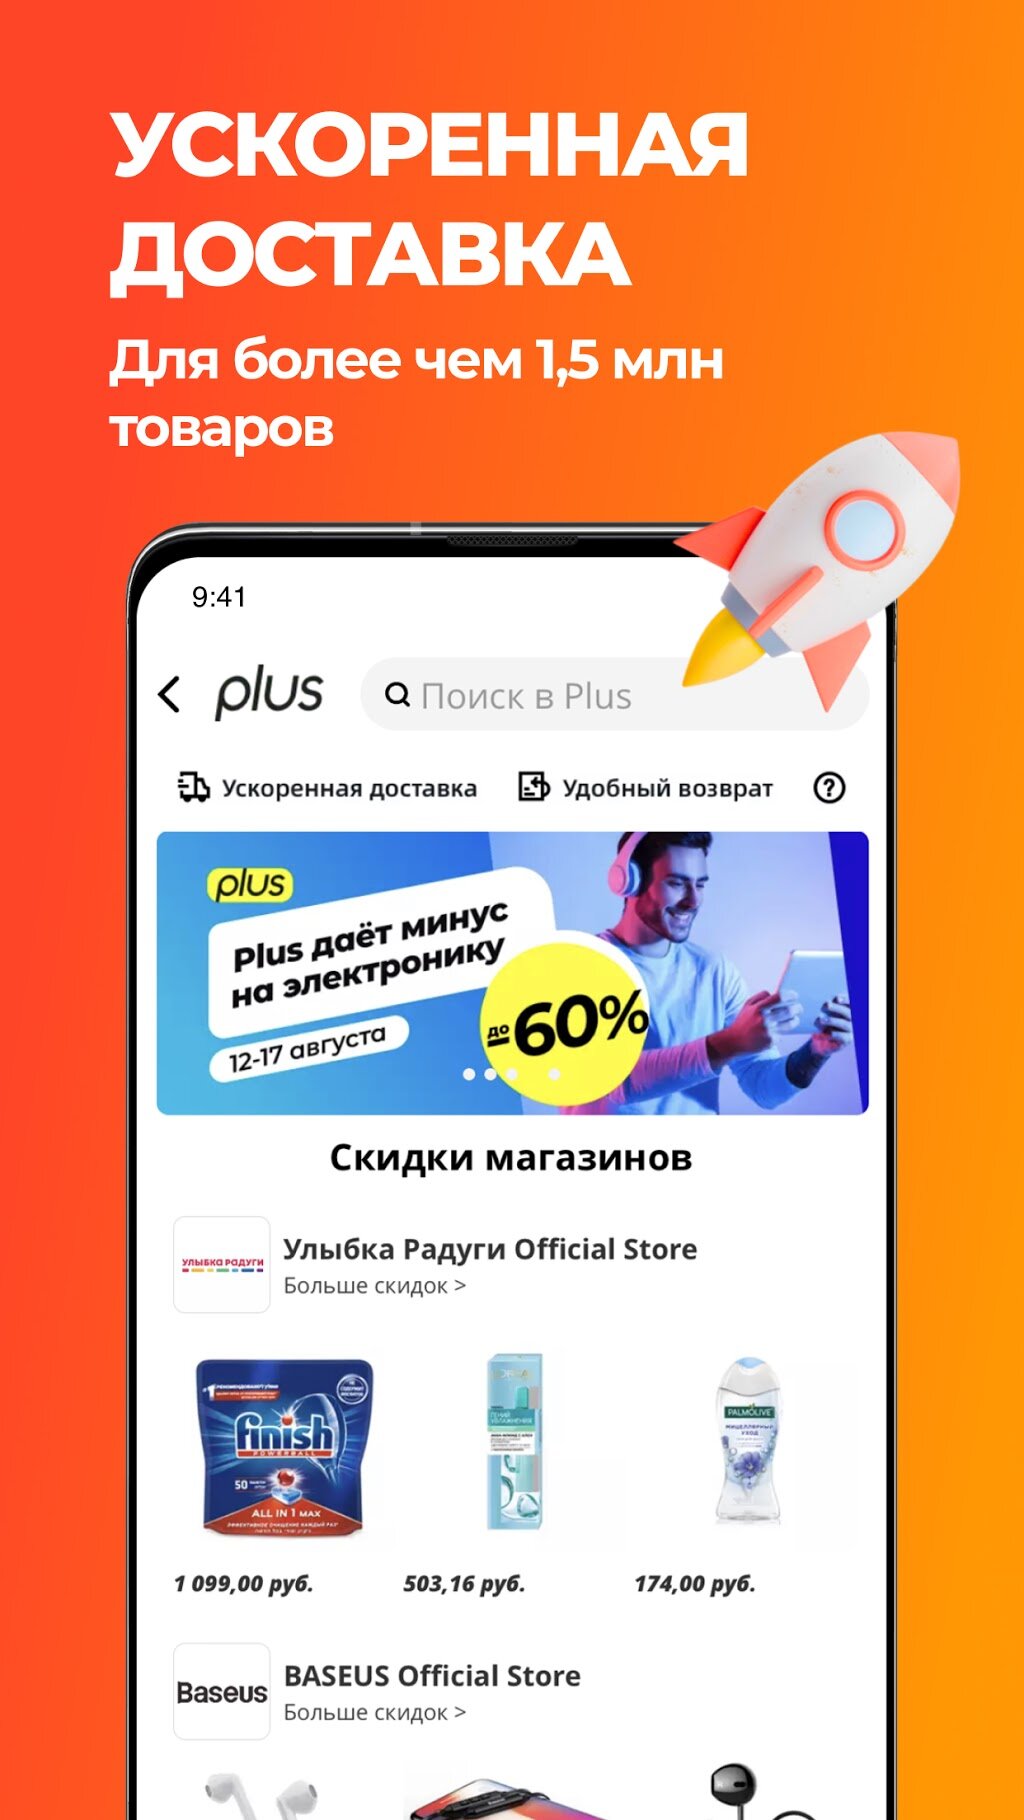 Закачать Интернет Магазин Алиэкспресс На Русском Языке